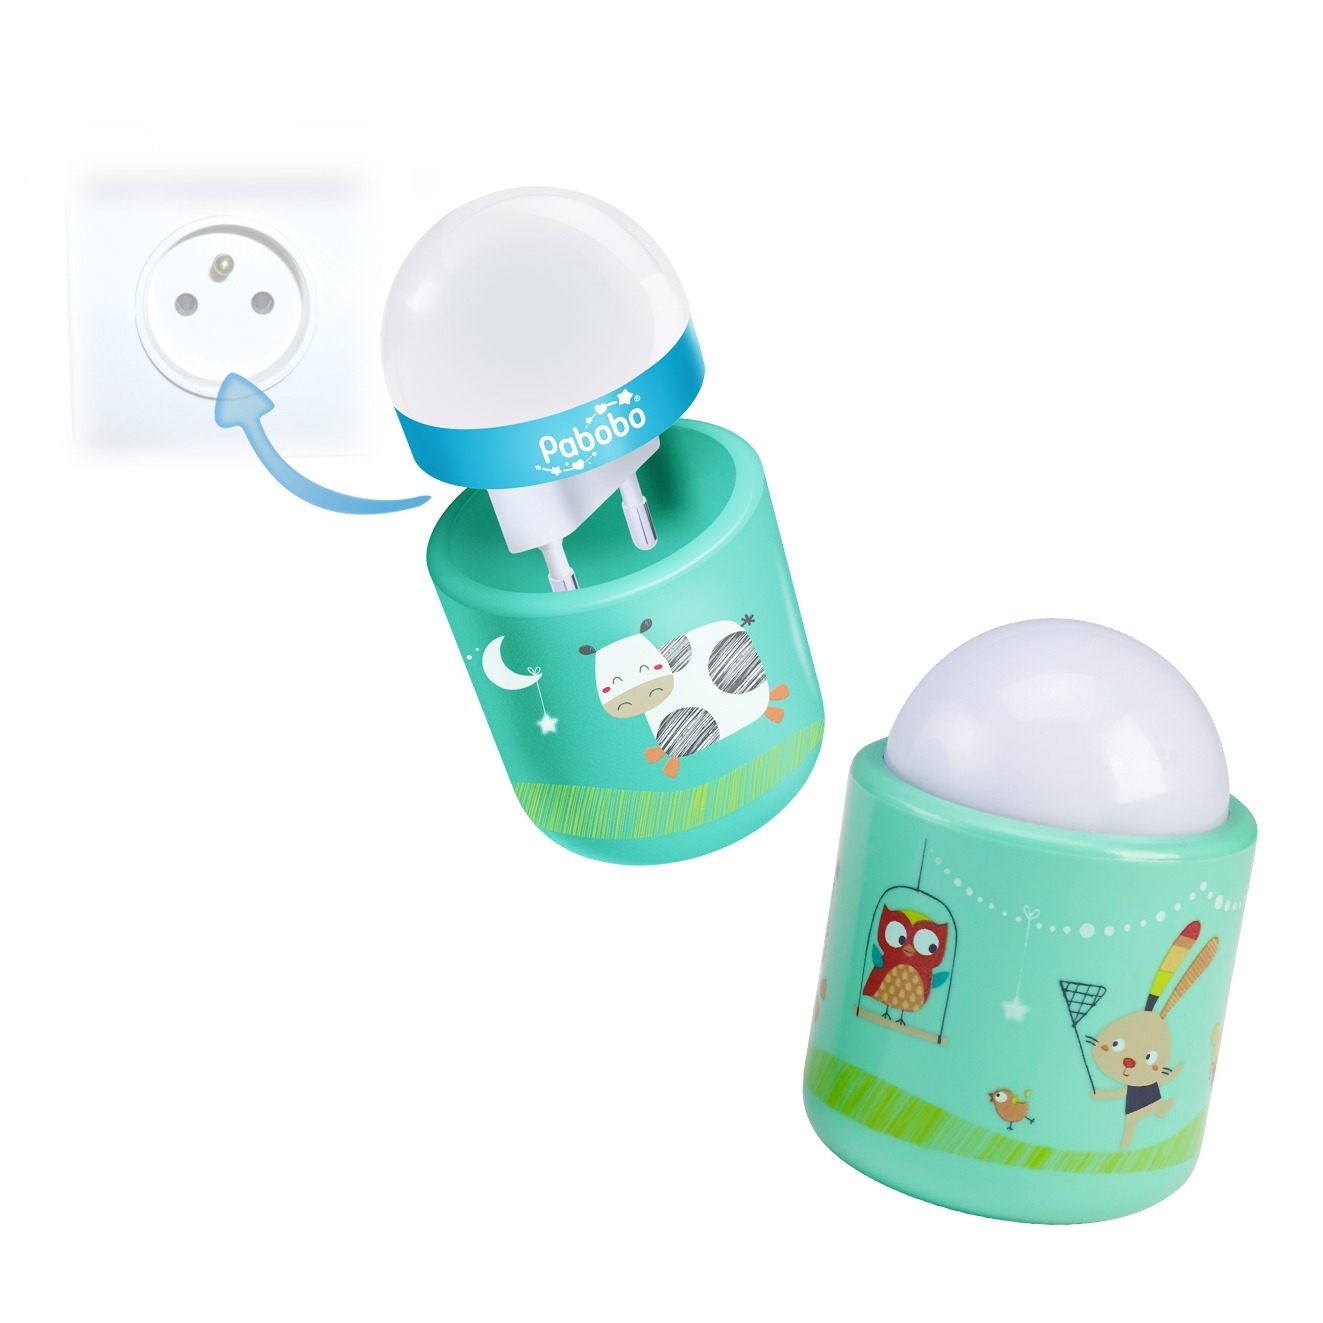 Veilleuse nomade bébé/petit enfant rechargeable (sans fil) - Luminaire  portable rassurant avec détecteur de lumière